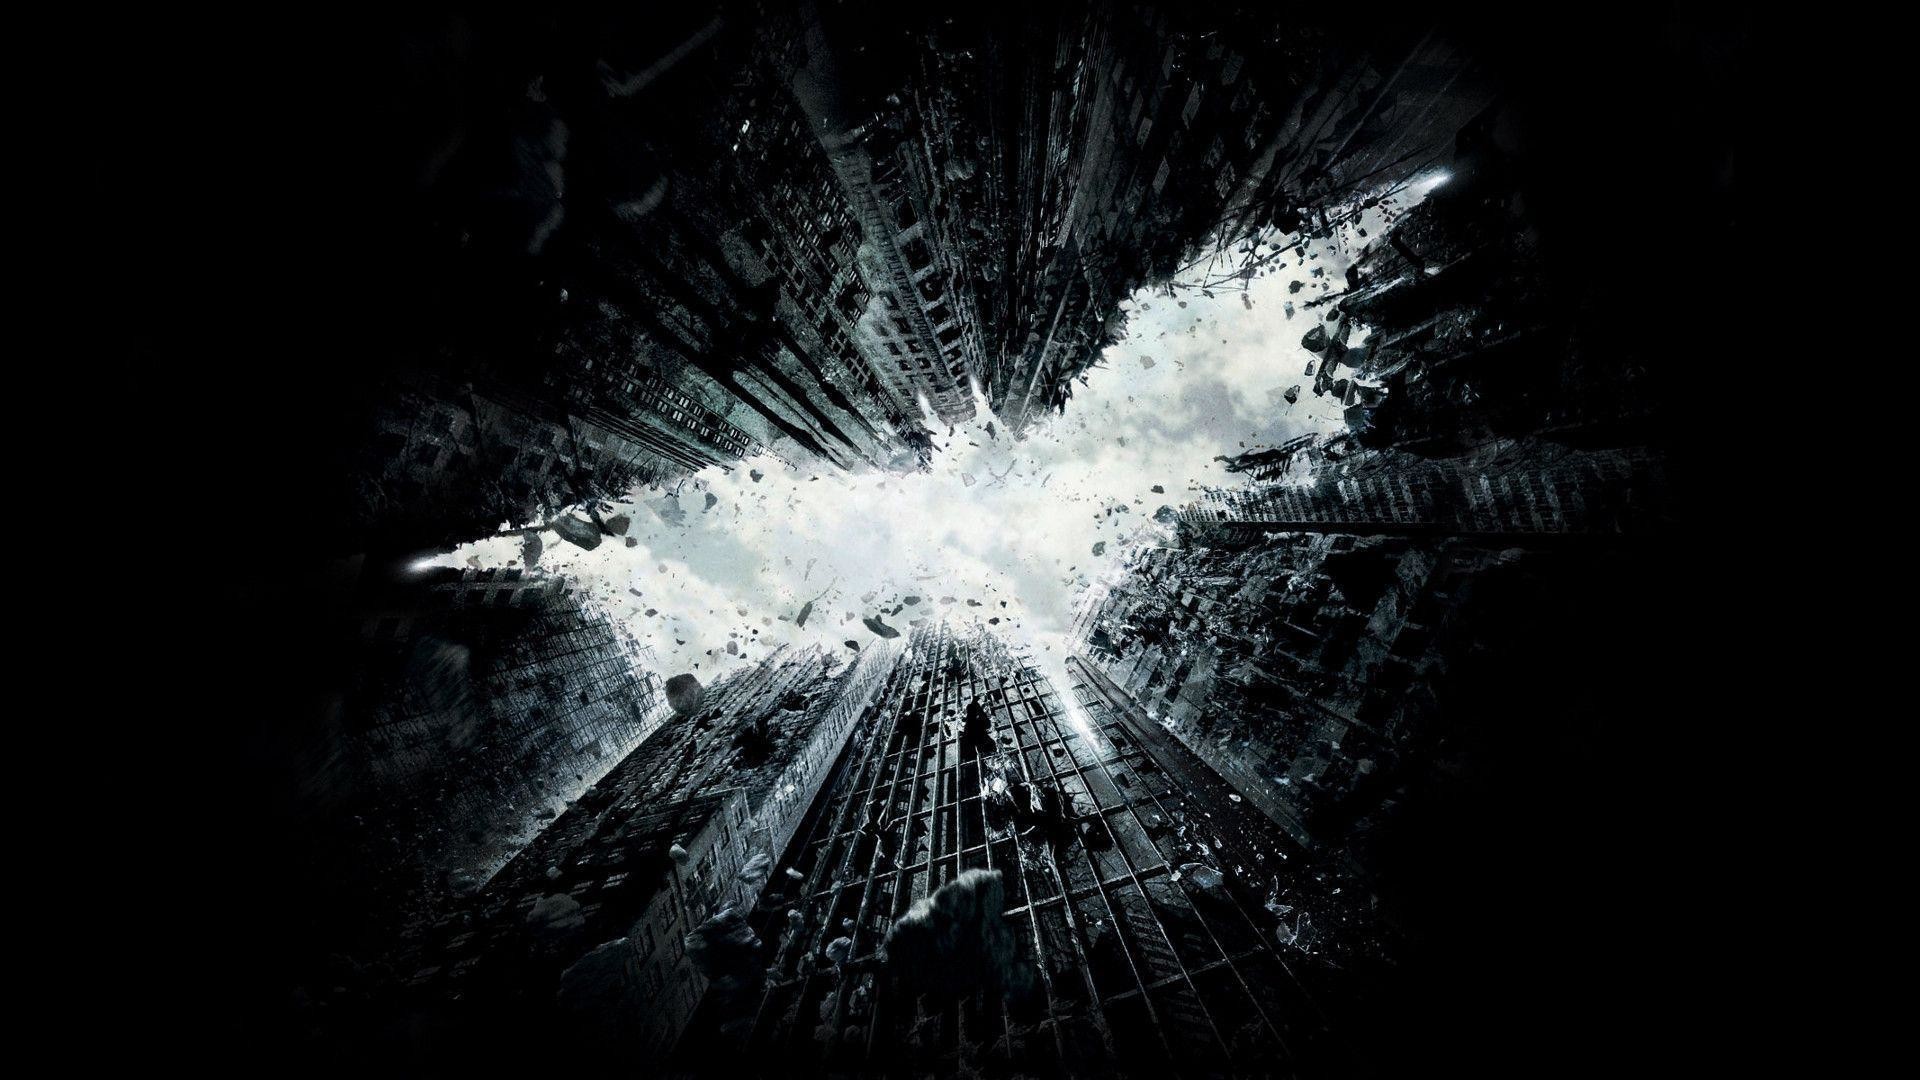 1920x1080, Dark Knight Rises Wallpaper The Dark Knight - Dark Knight Rises Teaser Poster - HD Wallpaper 